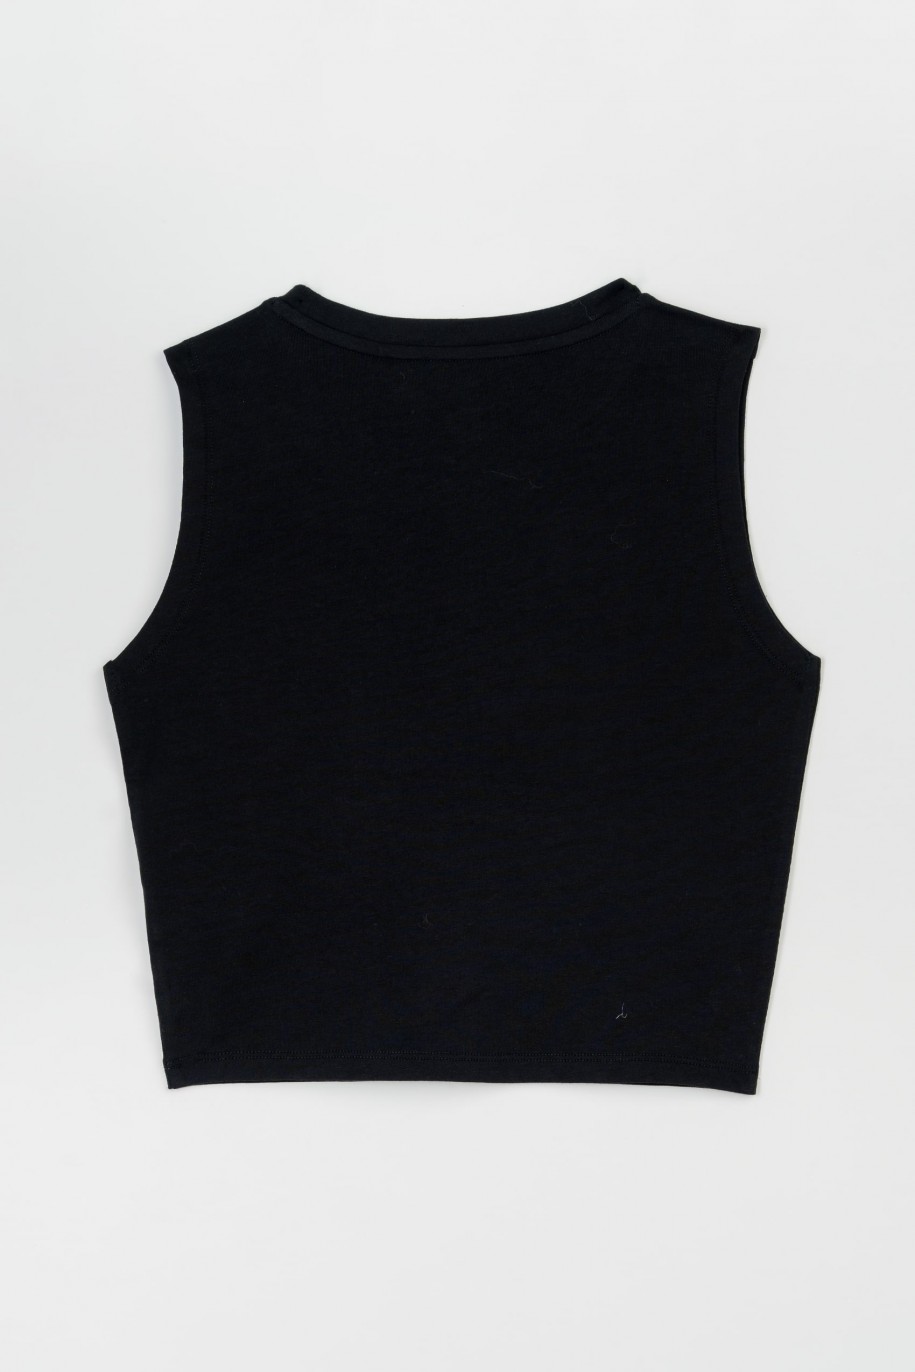 Czarny crop top bez rękawów z minimalistycznym nadrukiem na wysokości piersi - 47284